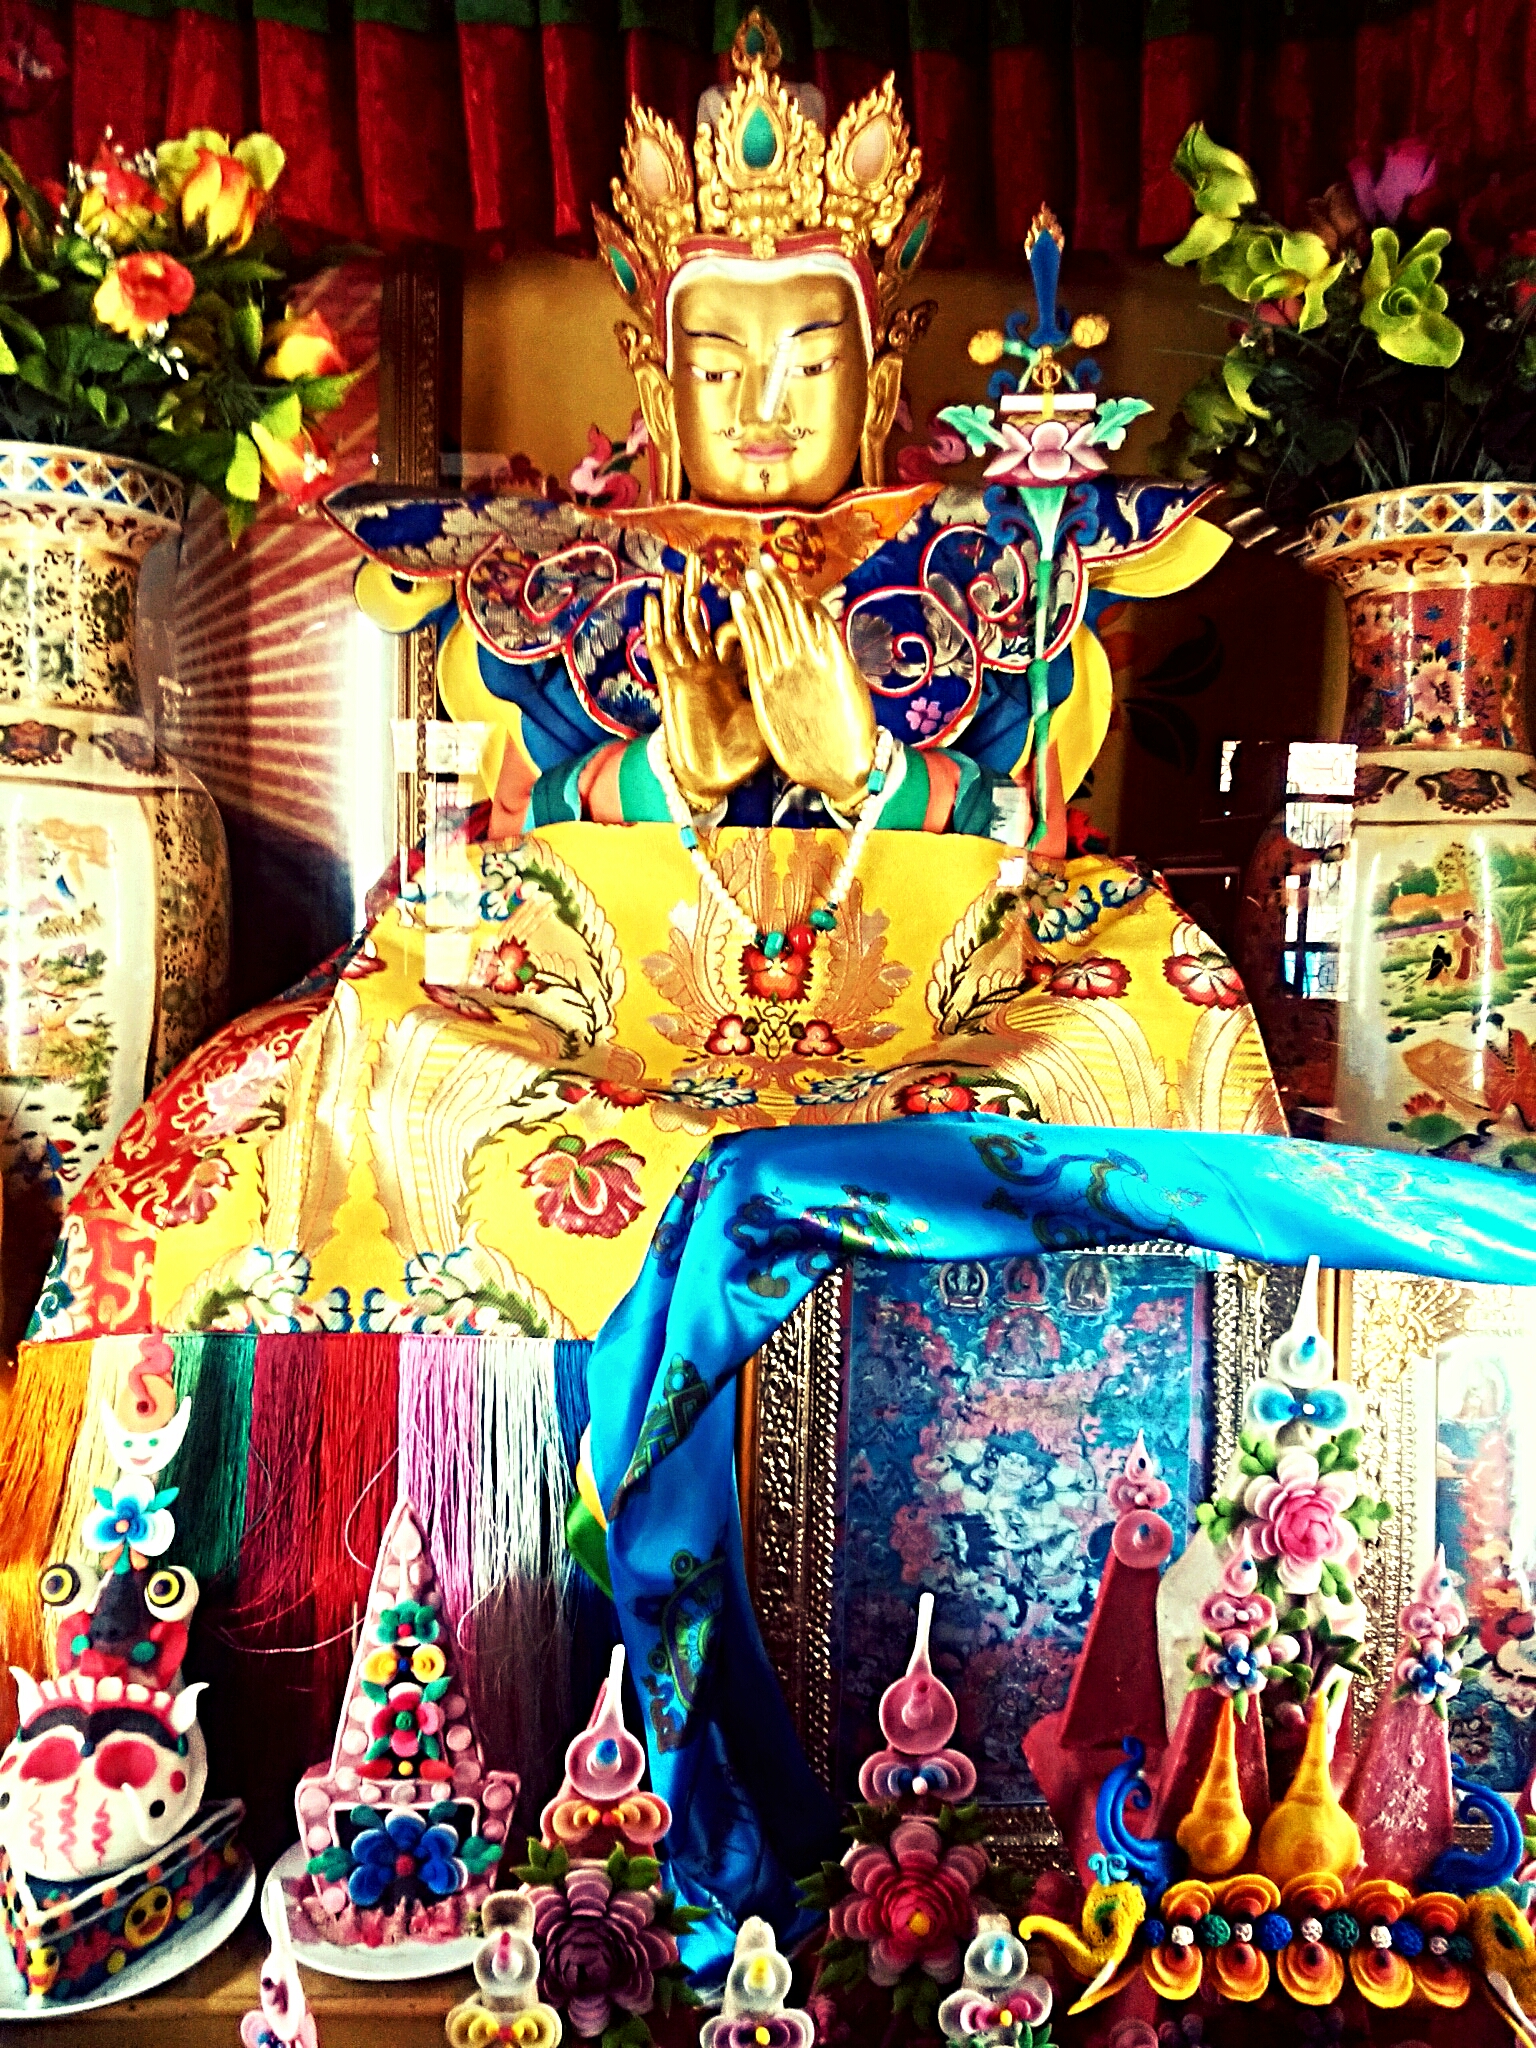 チベット激動の歴史『シャンシュン王国から文化大革命までを振り返る』